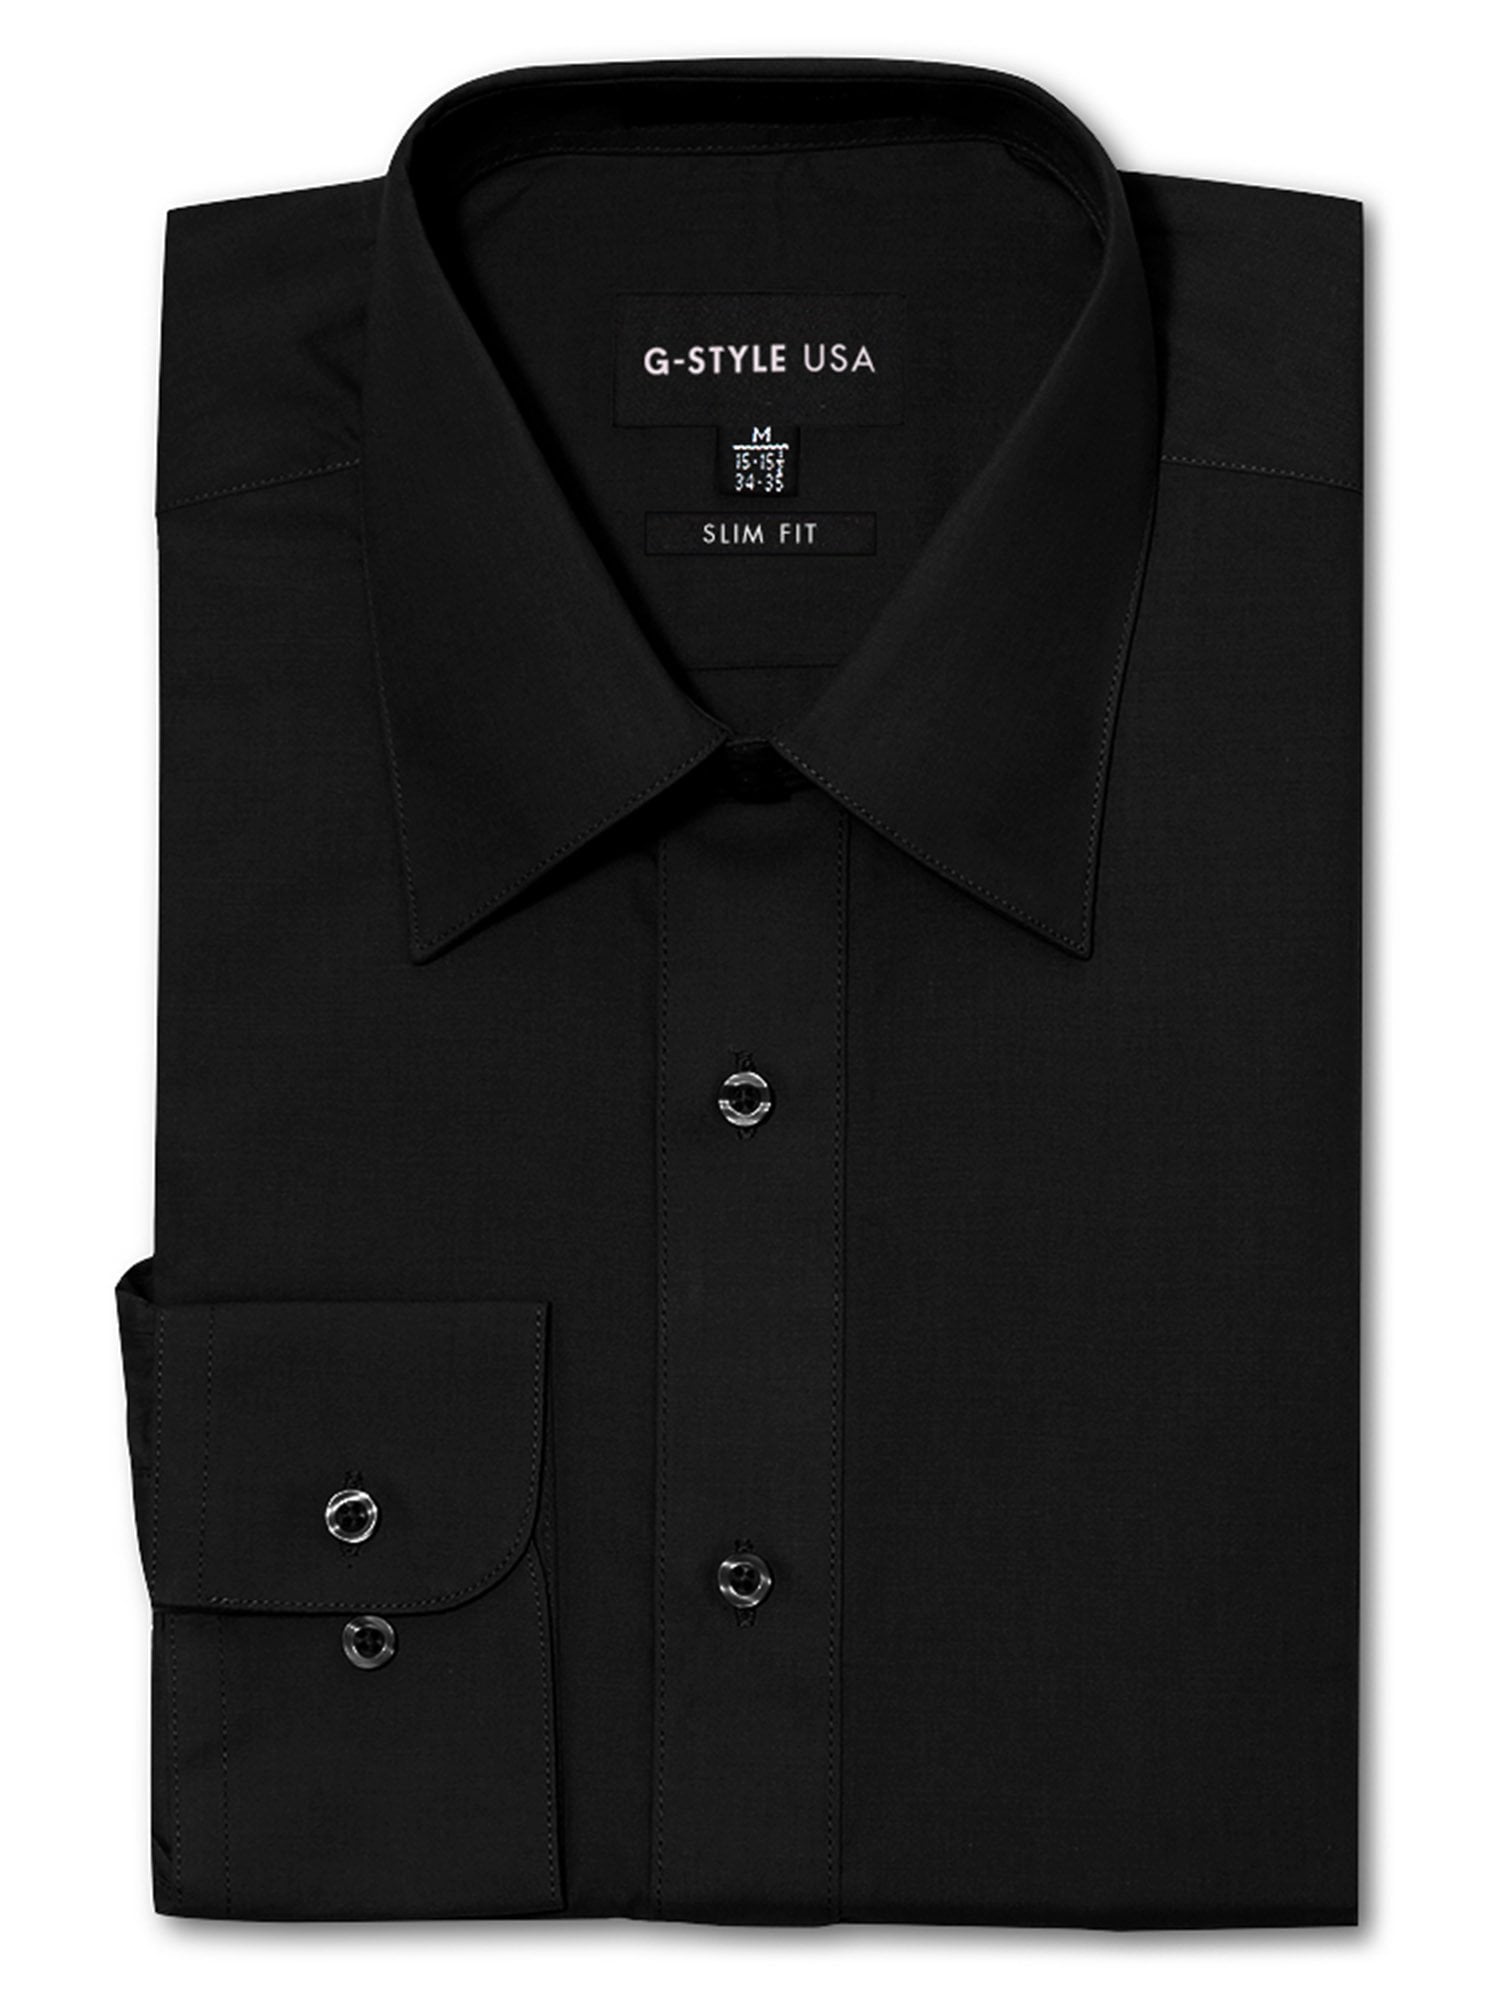 black dress shirt for men